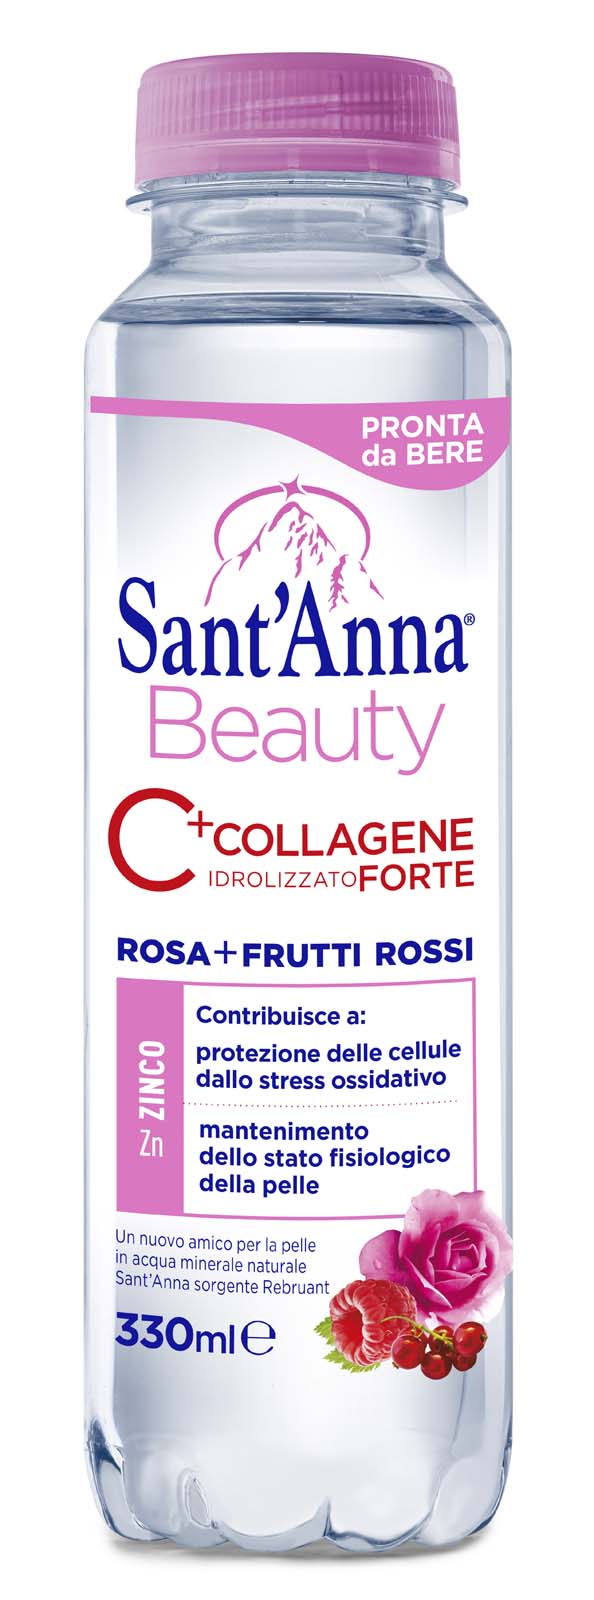 Sant'anna beauty 0,33l collagene rosa e frutti rossi - Sant'Anna Beauty